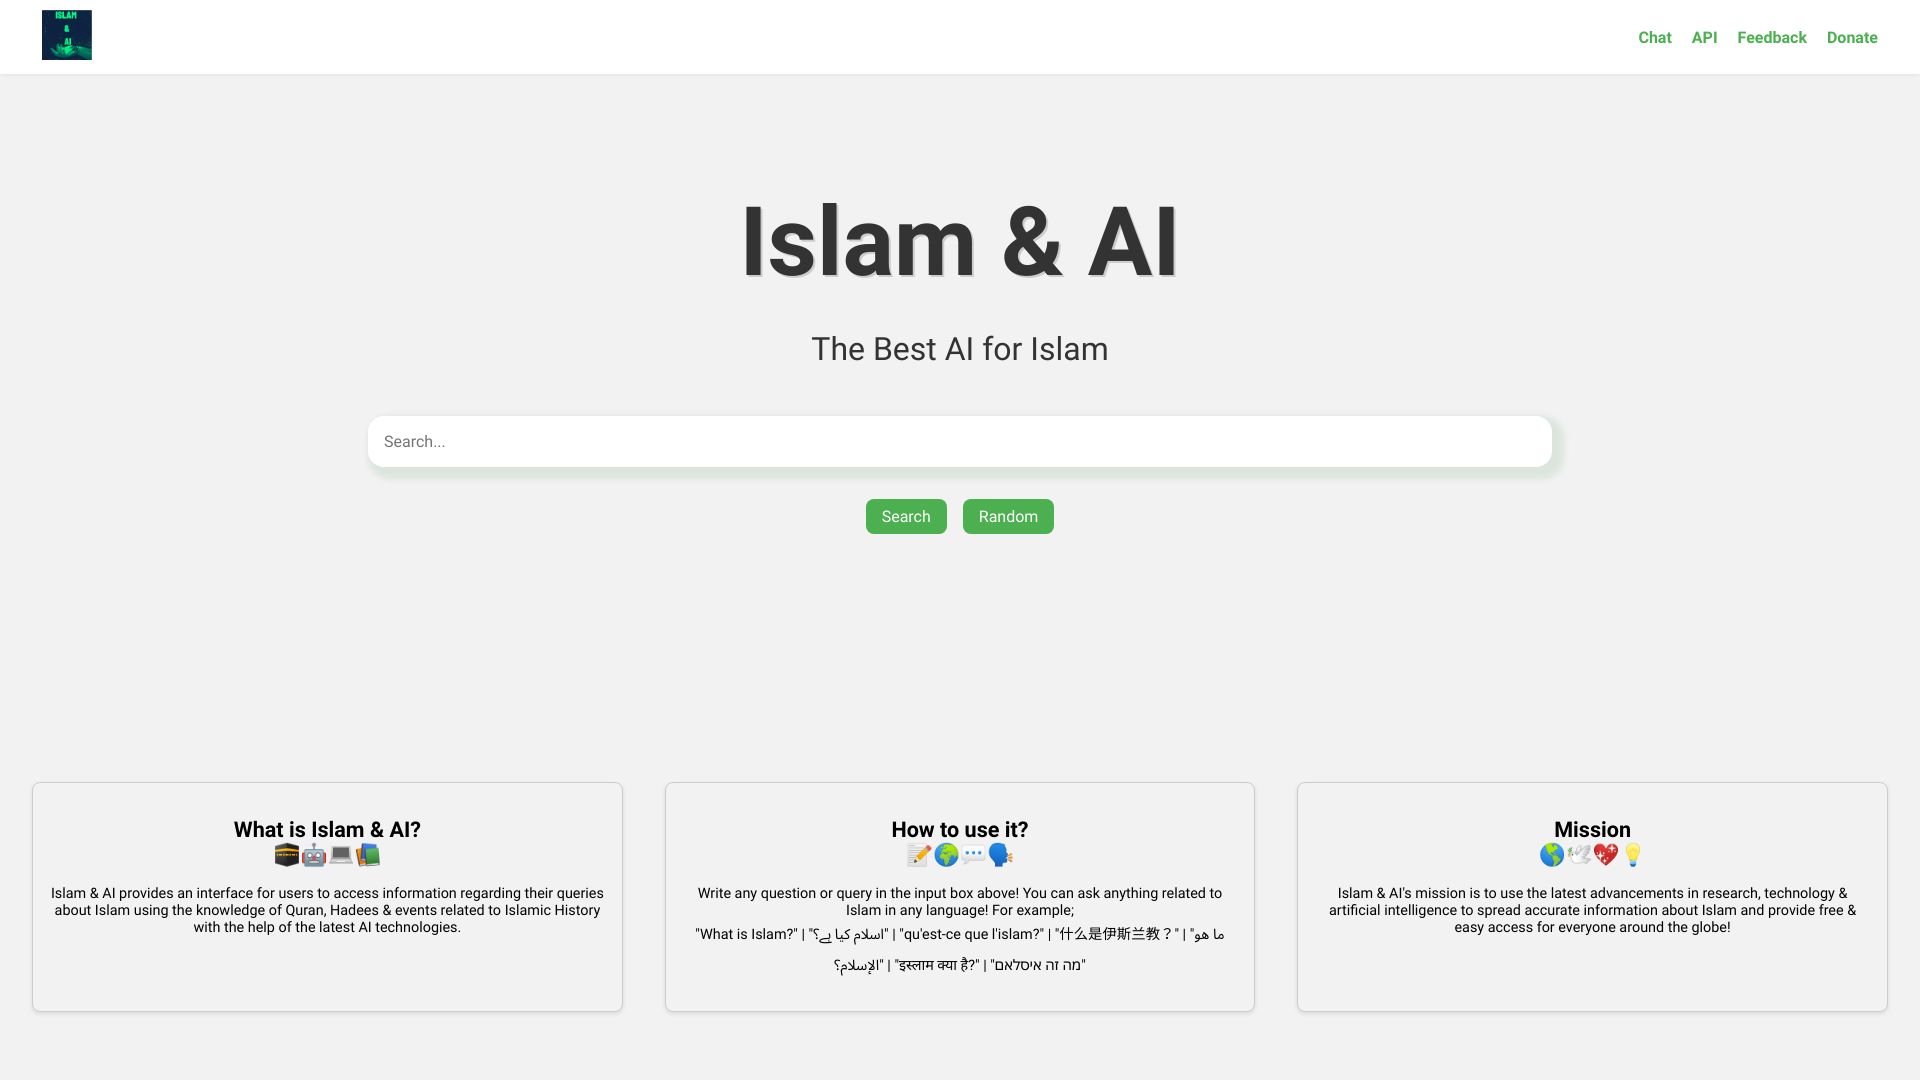 Islam & AI